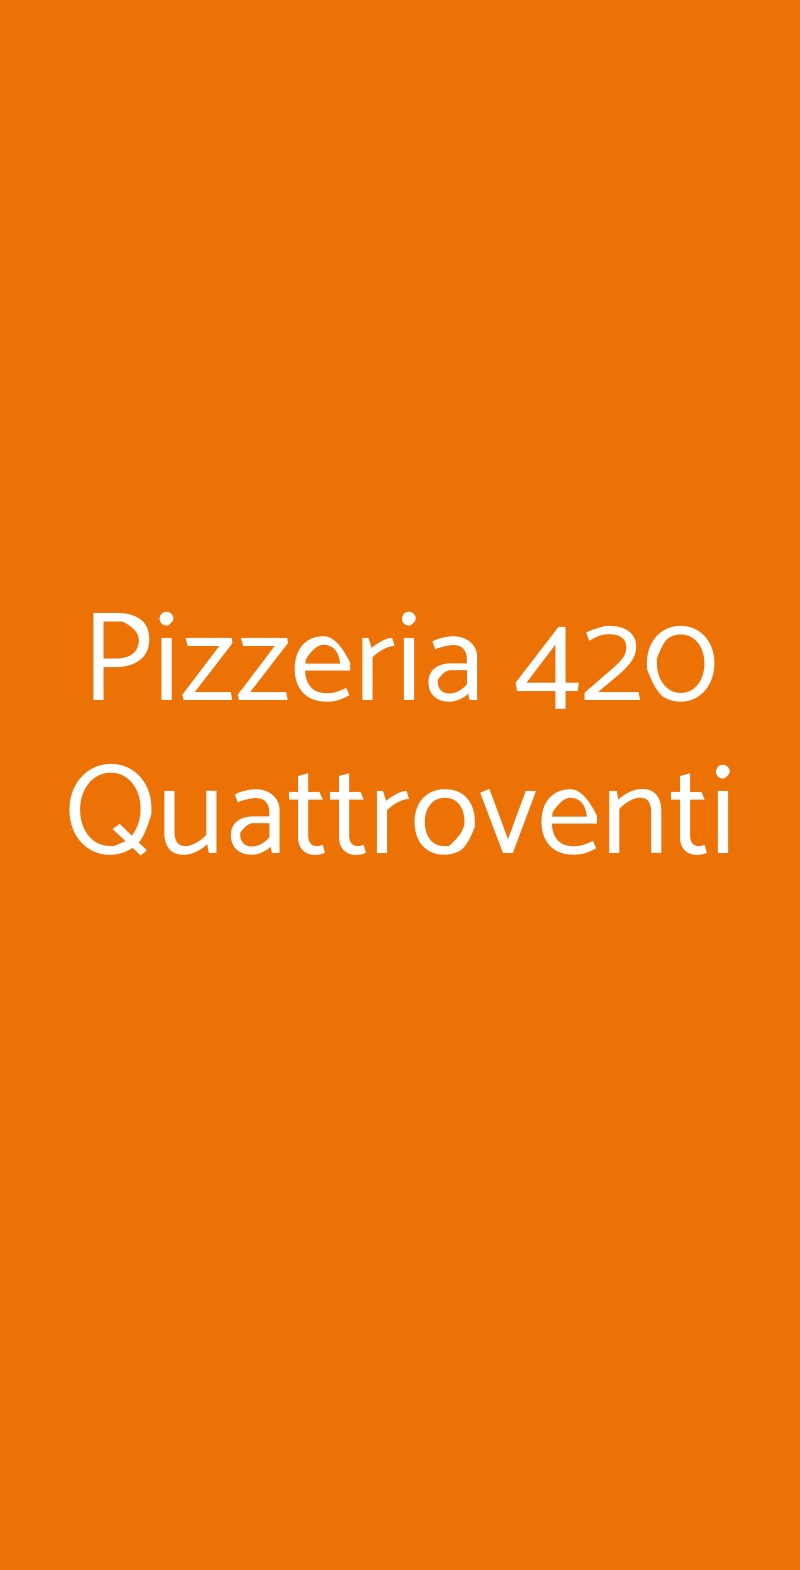 Pizzeria 420 Quattroventi Bari menù 1 pagina